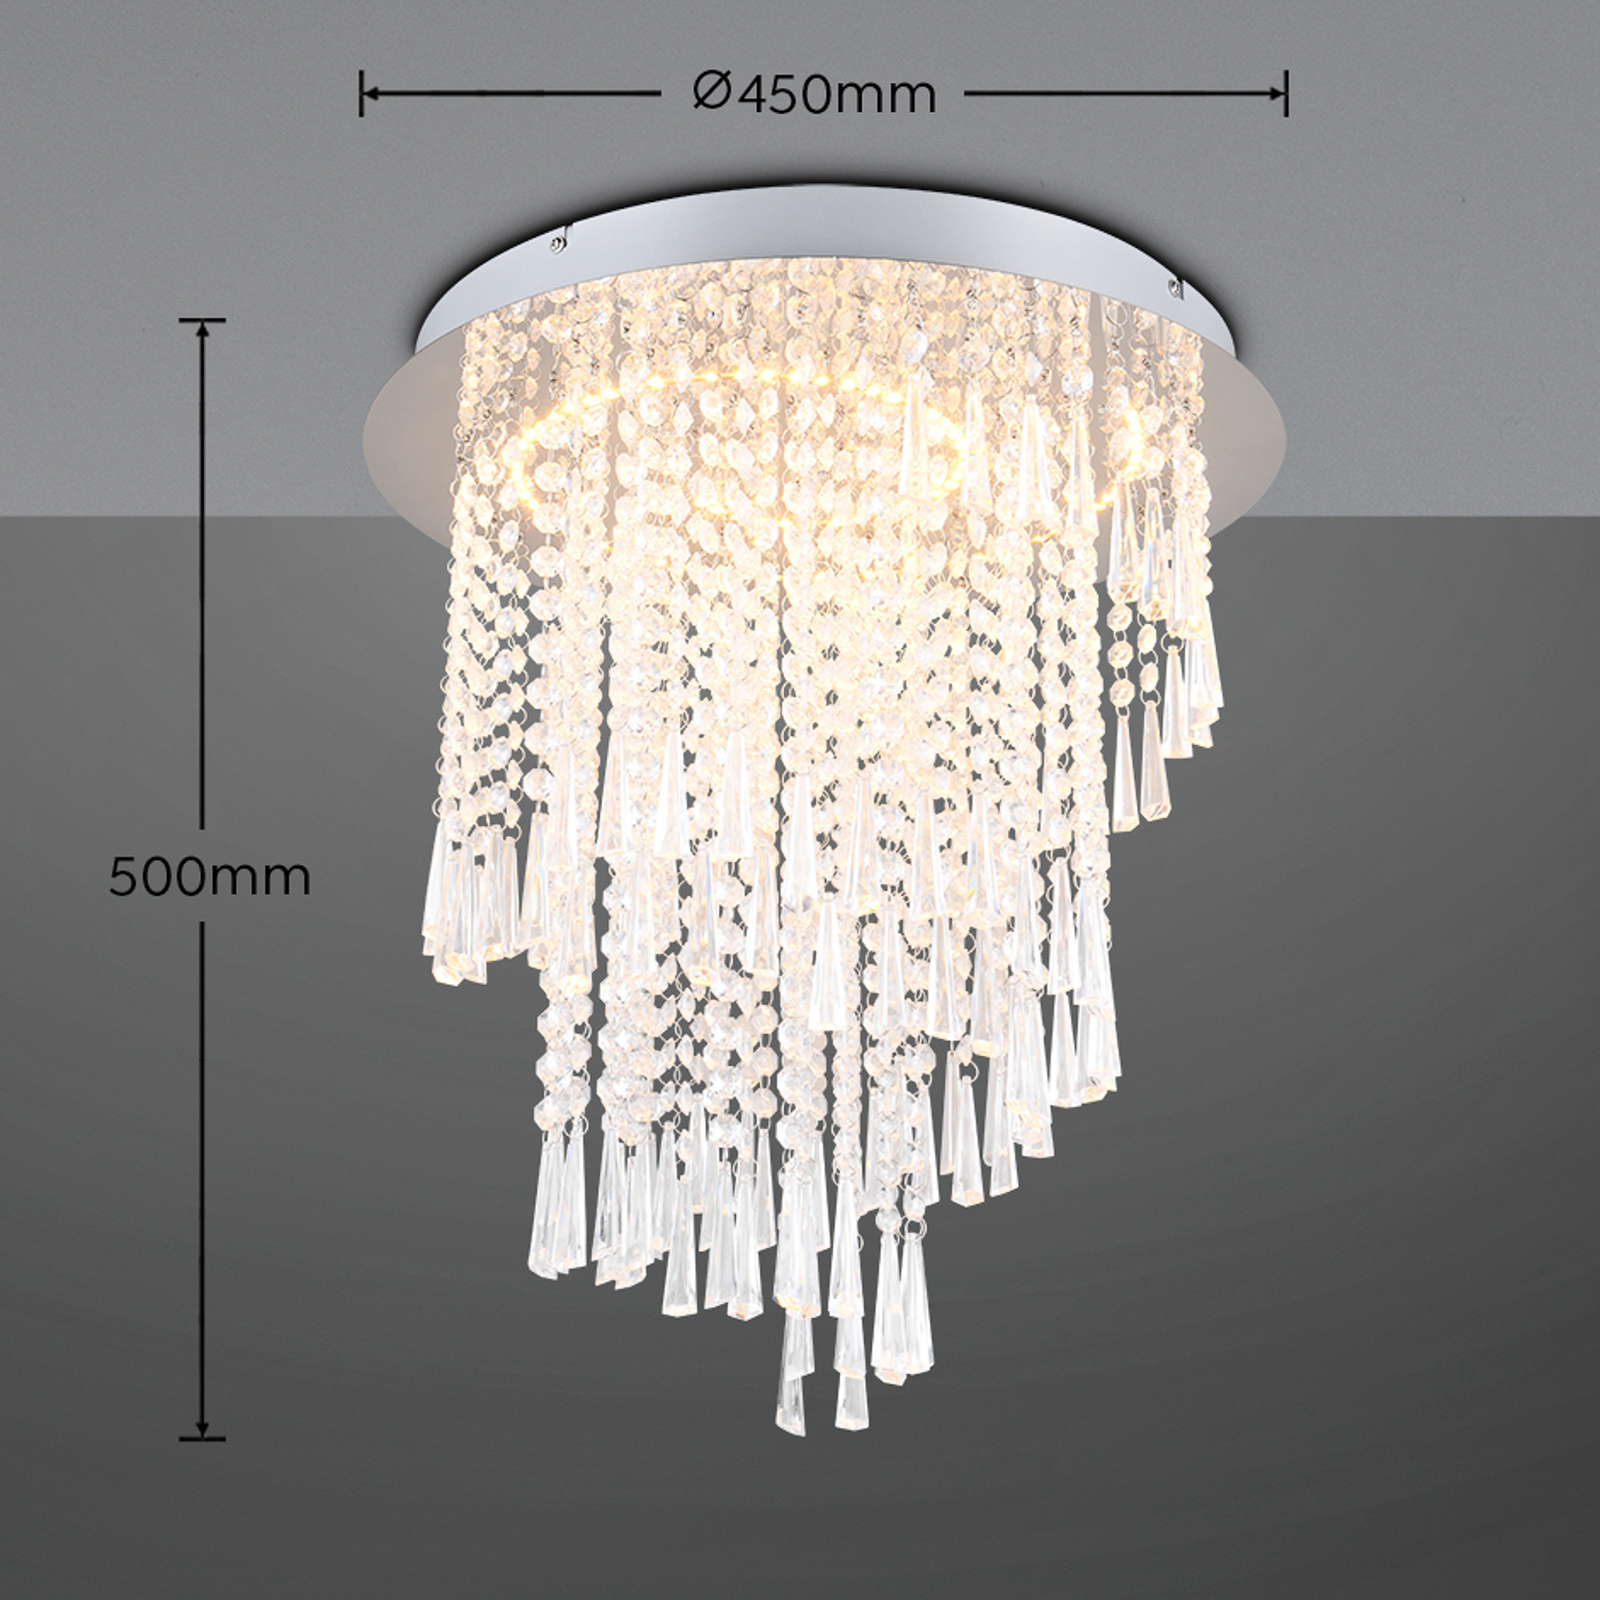 LED lubinis šviestuvas Pomp, Ø 45 cm, chromas, akrilas/metalas, CCT